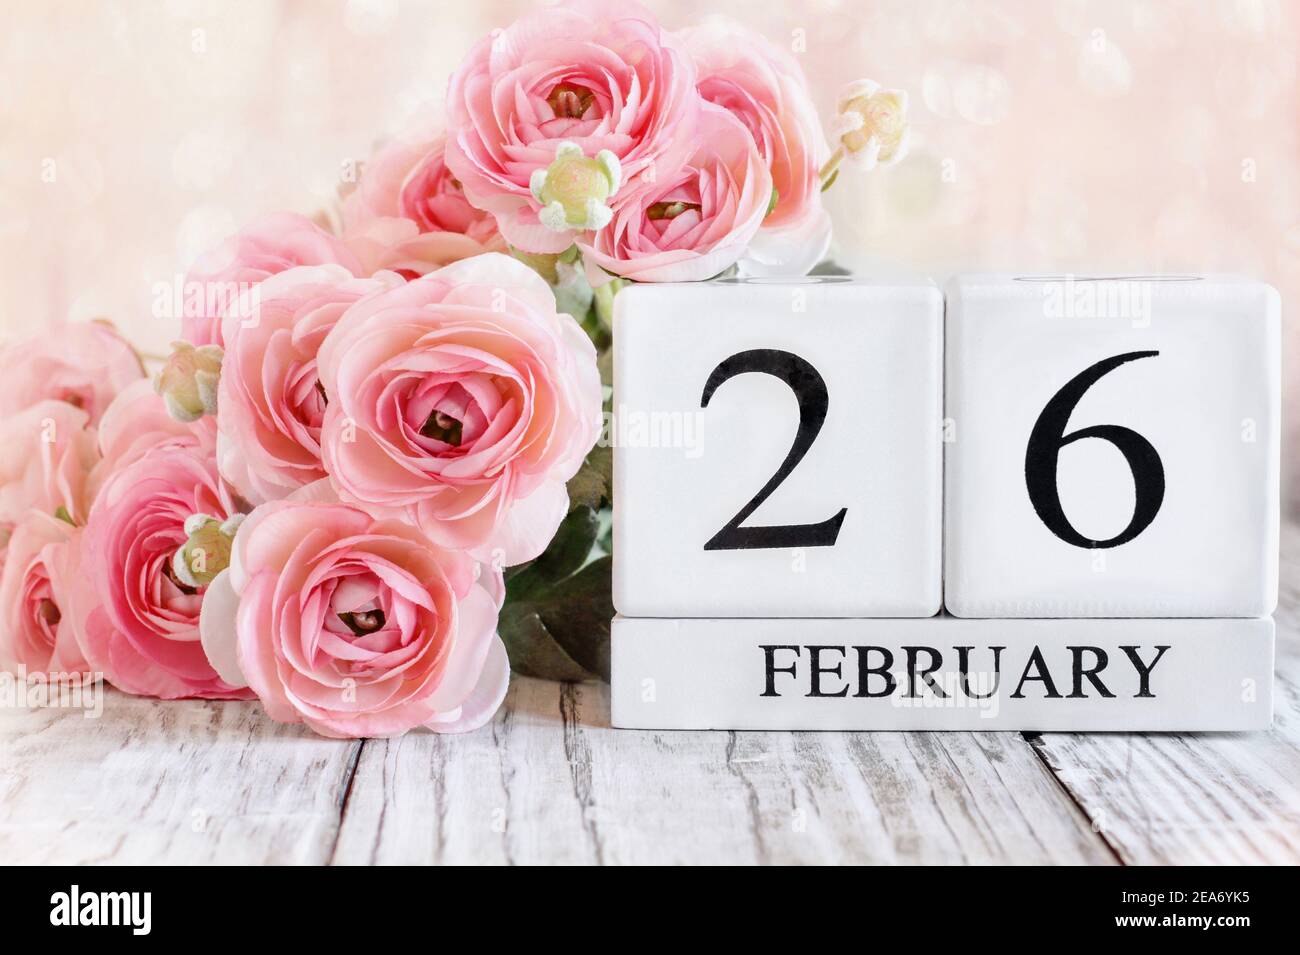 Weiße Holz Kalenderblöcke mit dem Datum Februar 26th und rosa Ranunculus Blumen über einem Holztisch. Selektiver Fokus mit unscharfem Hintergrund. Stockfoto